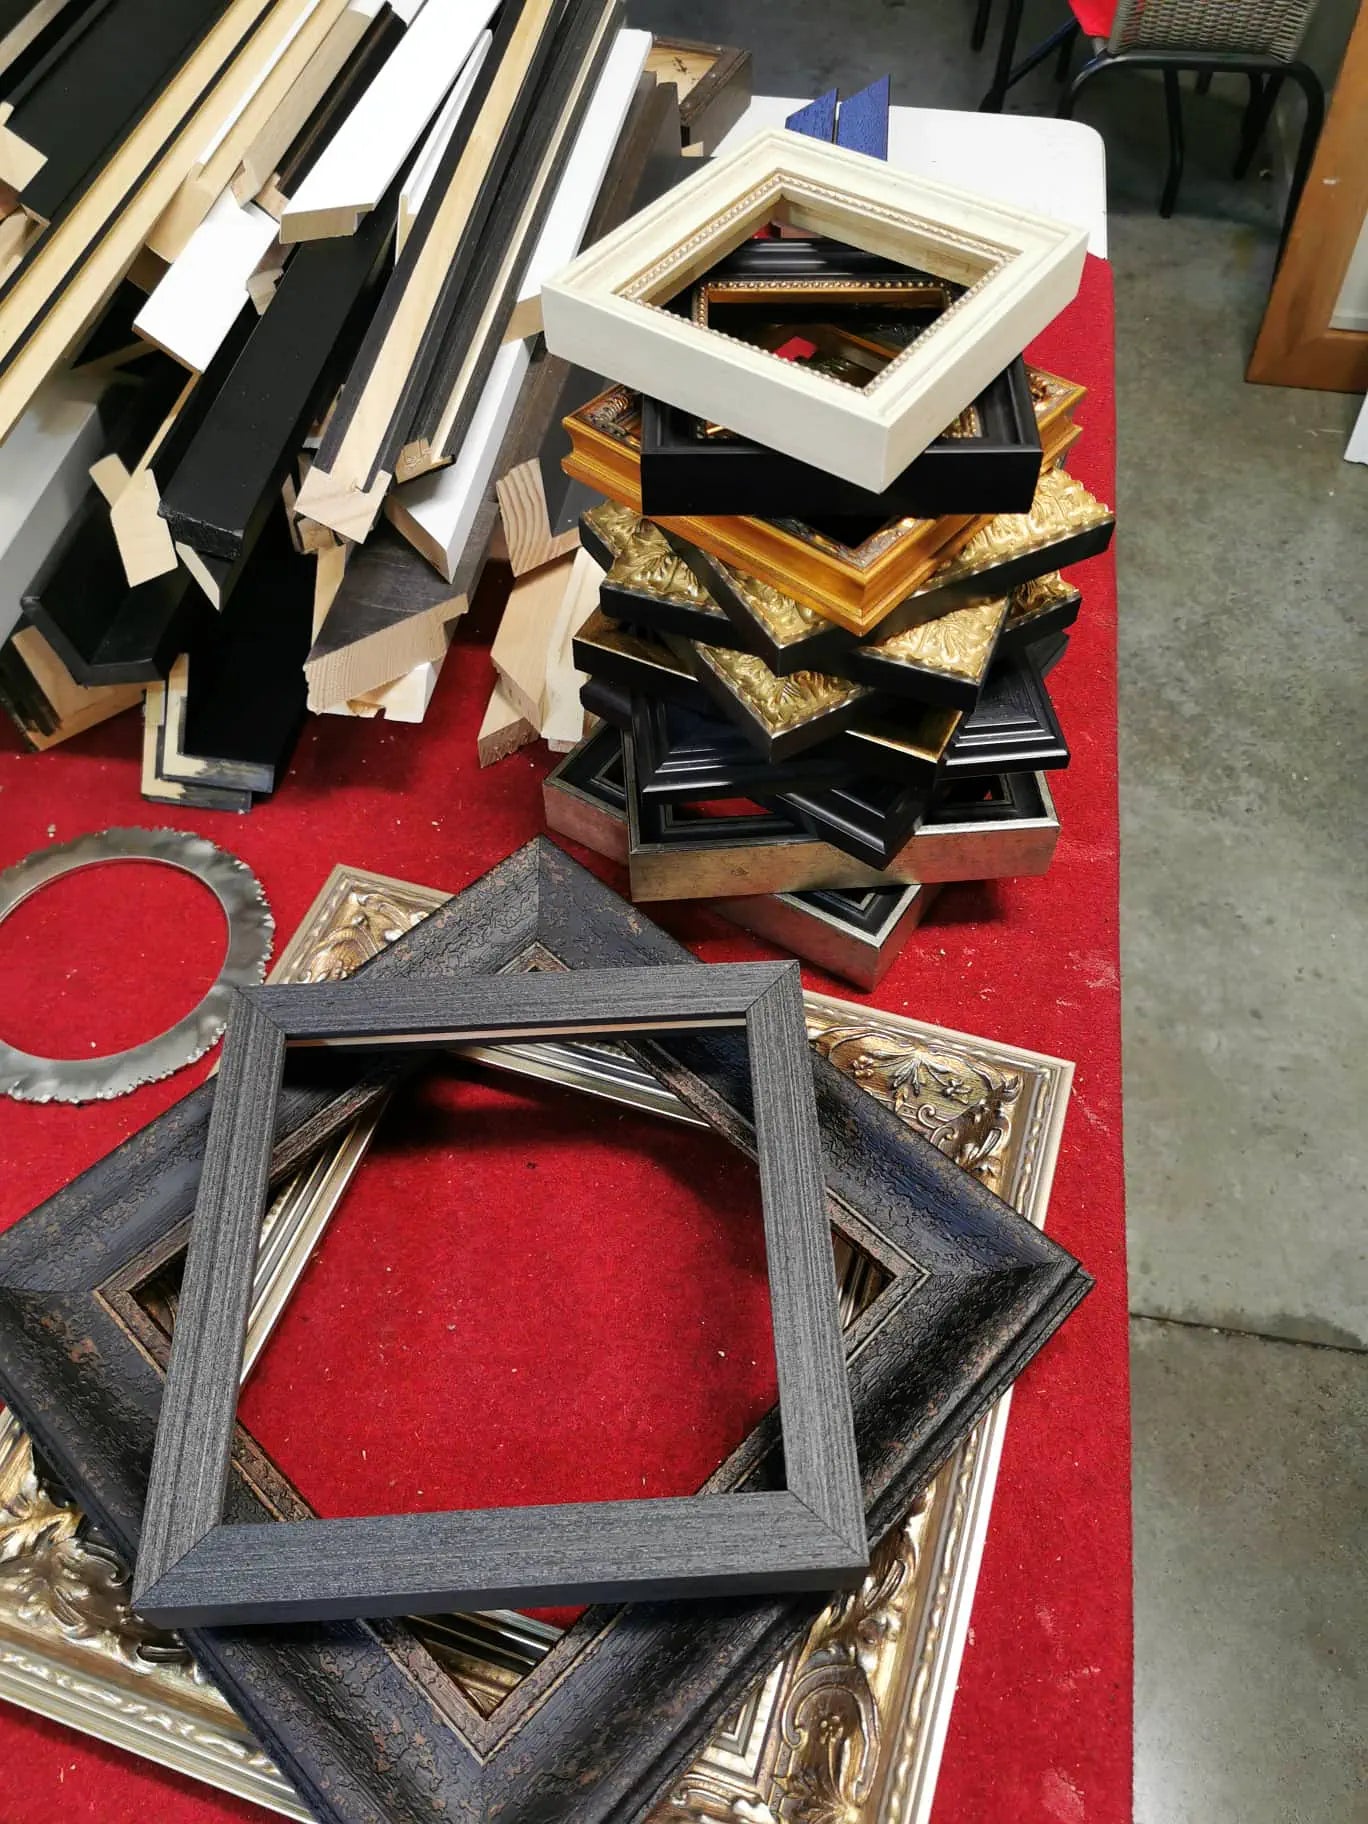 Frames piled on a table